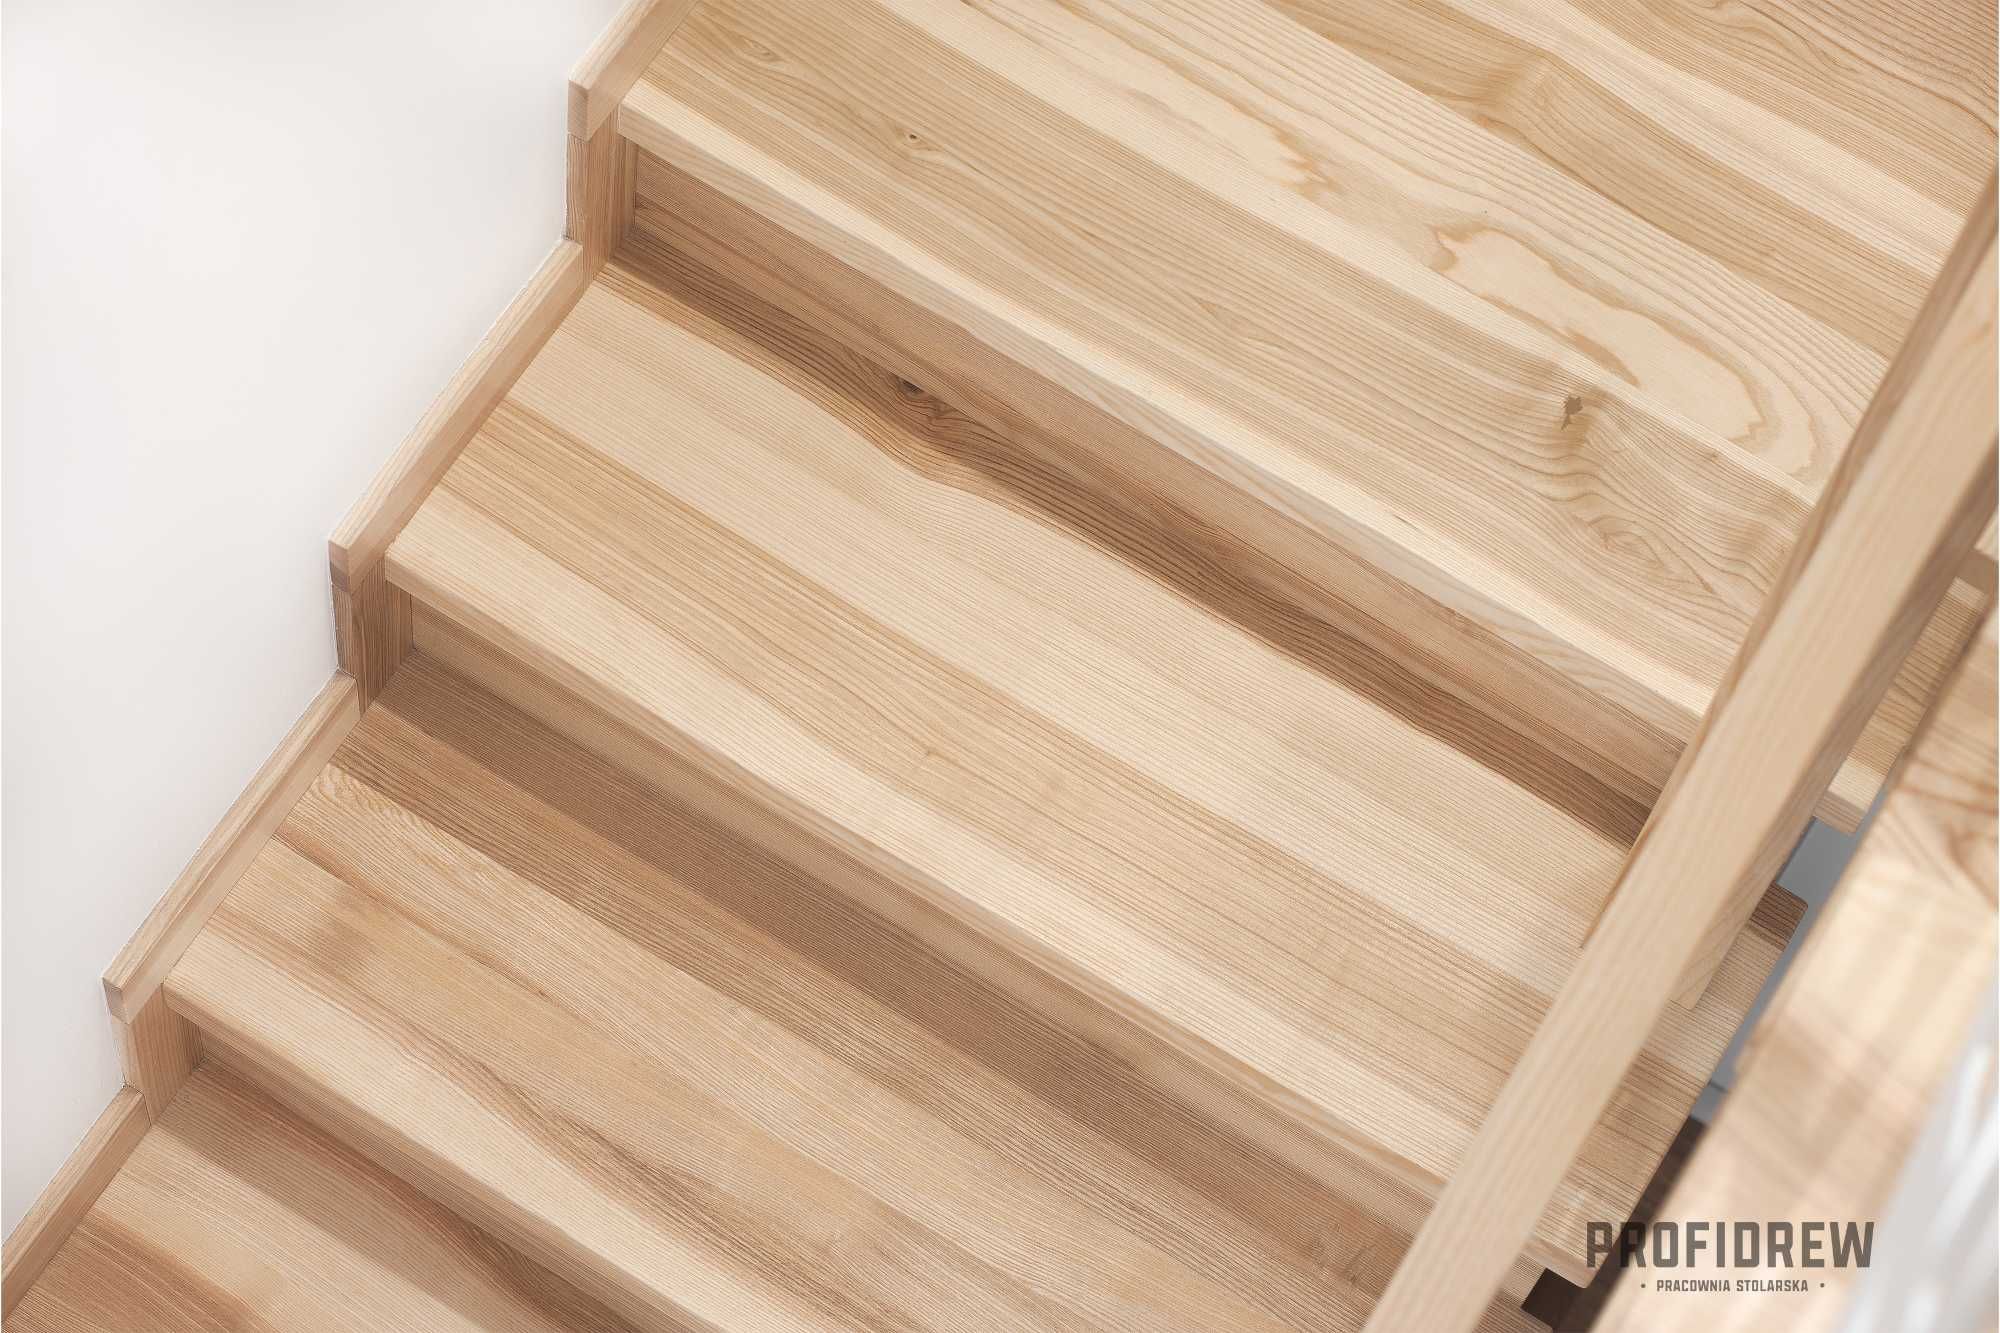 Stopnie jesionowe, lakierowane, 100x30x4  schody drewniane | Producent